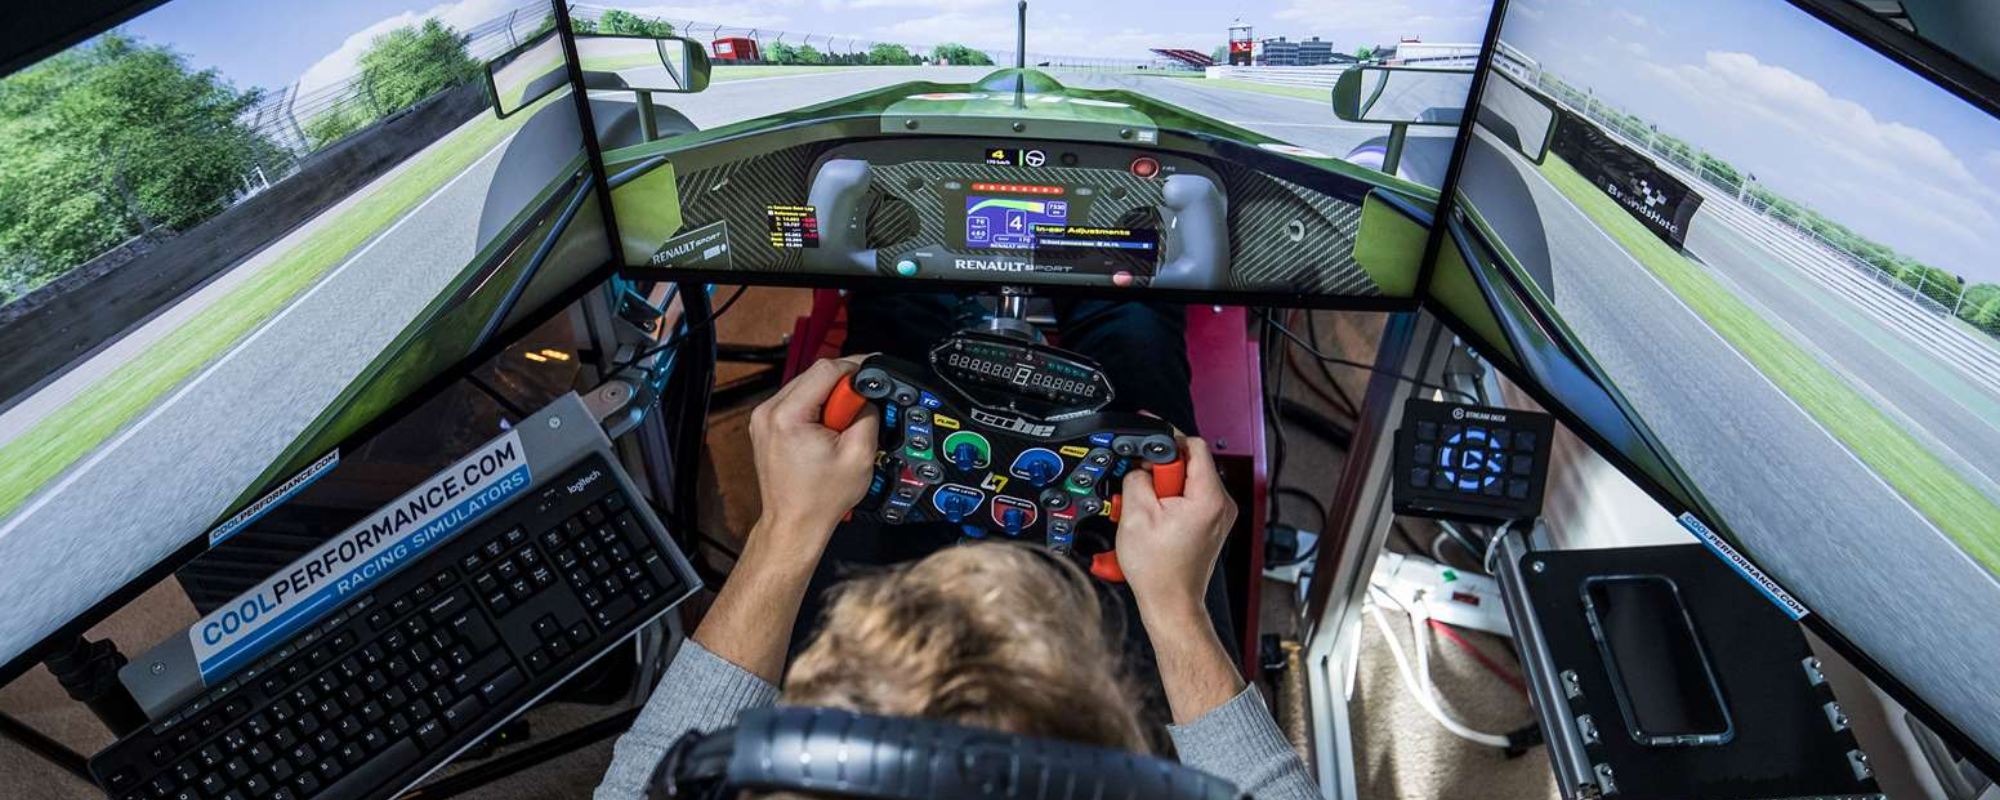 anskaf din nye racing simulator skærmophæng hos geekd, alt indenfor skærmophæng til dit racing simulator setup hos Geekd.dk